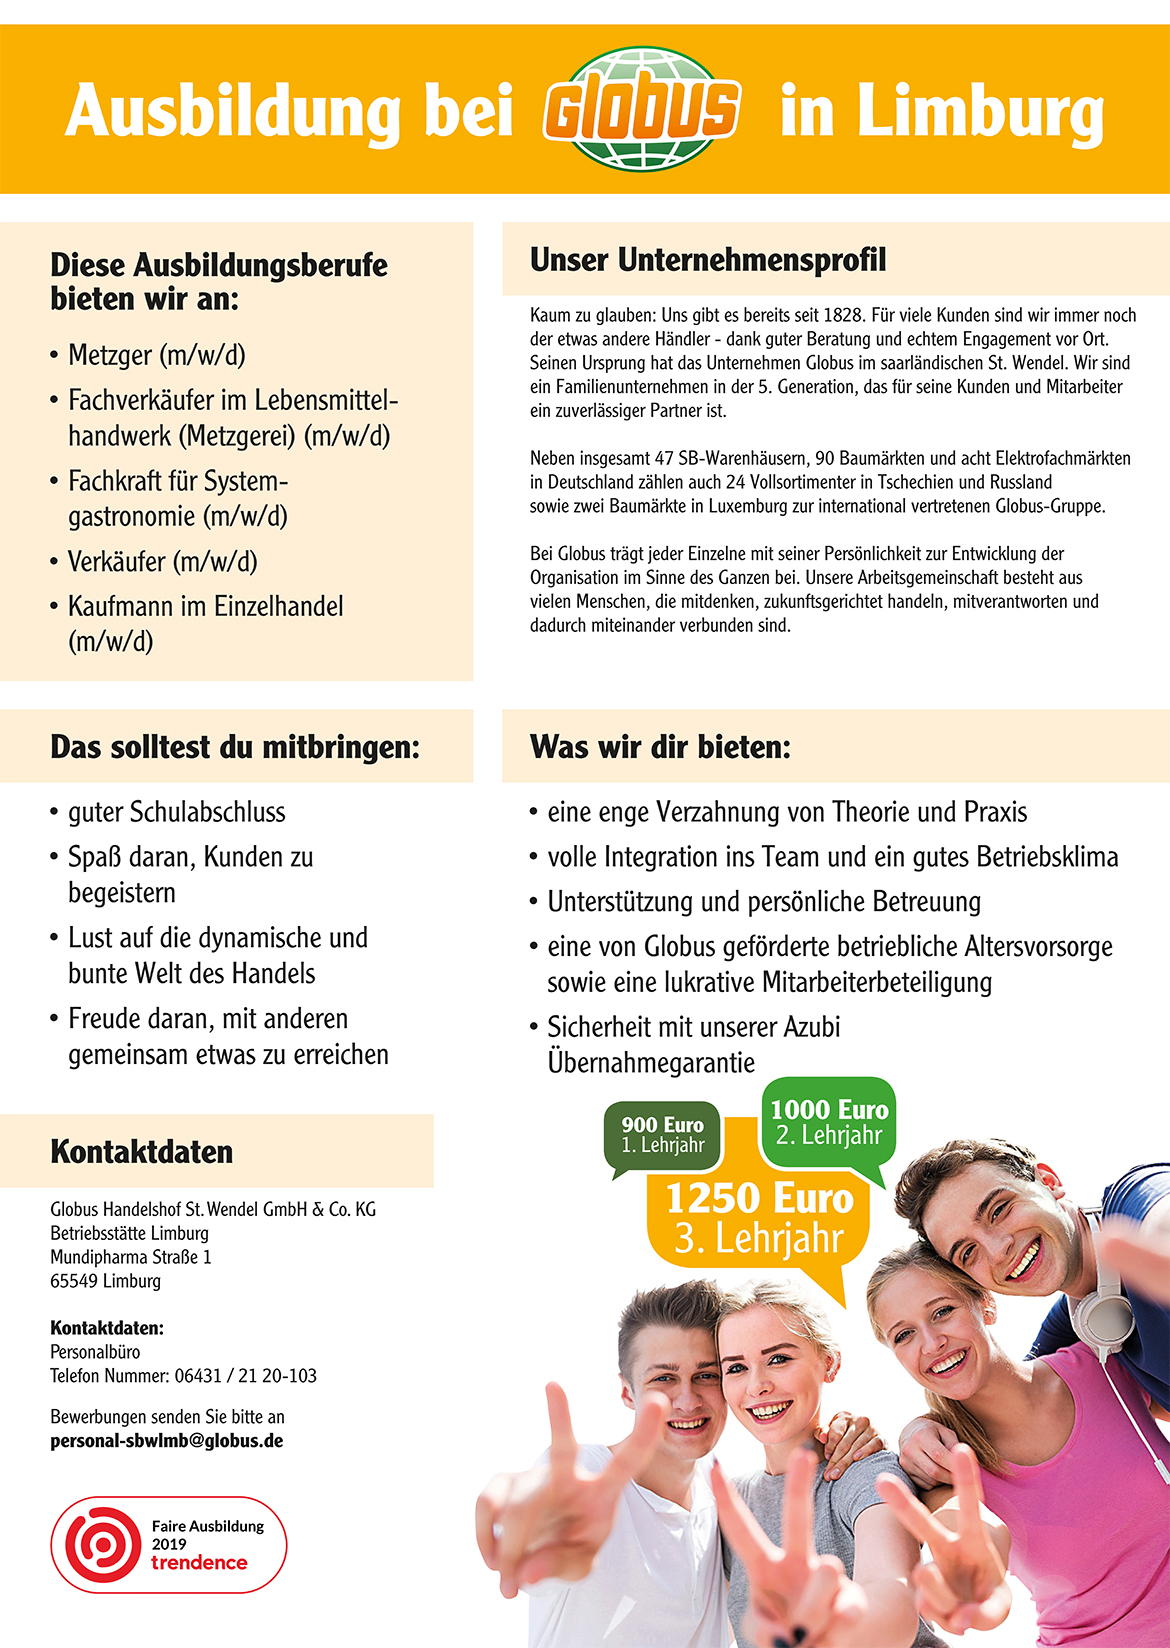 Ausbildungsplakat: Globus Limburg